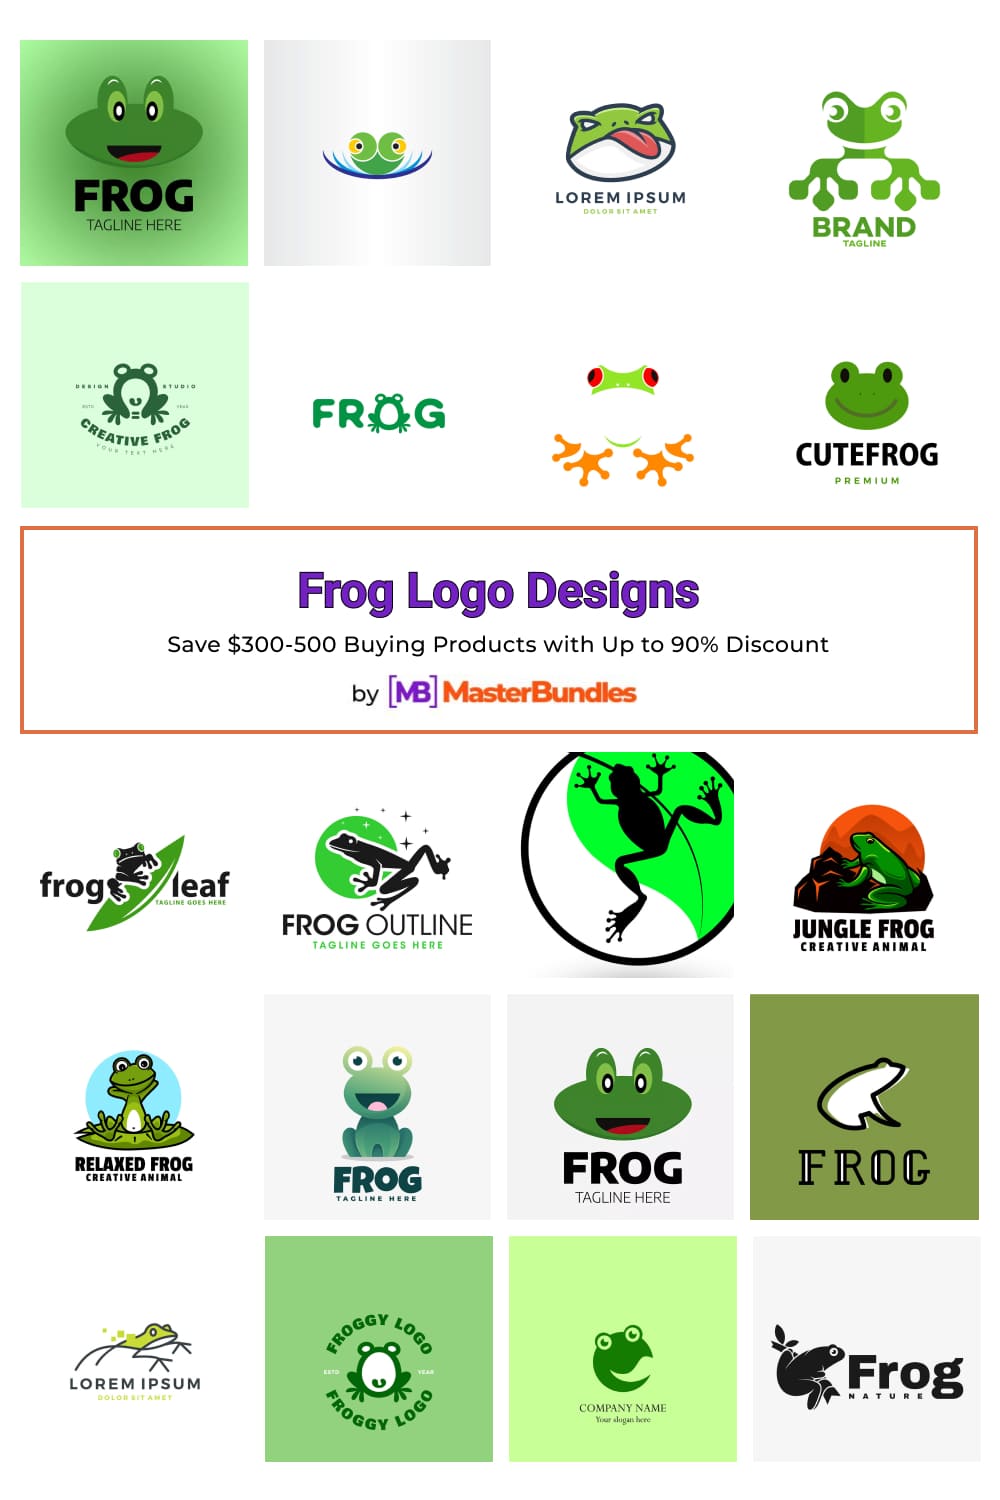 Frog Logo Designs for Pinterest.